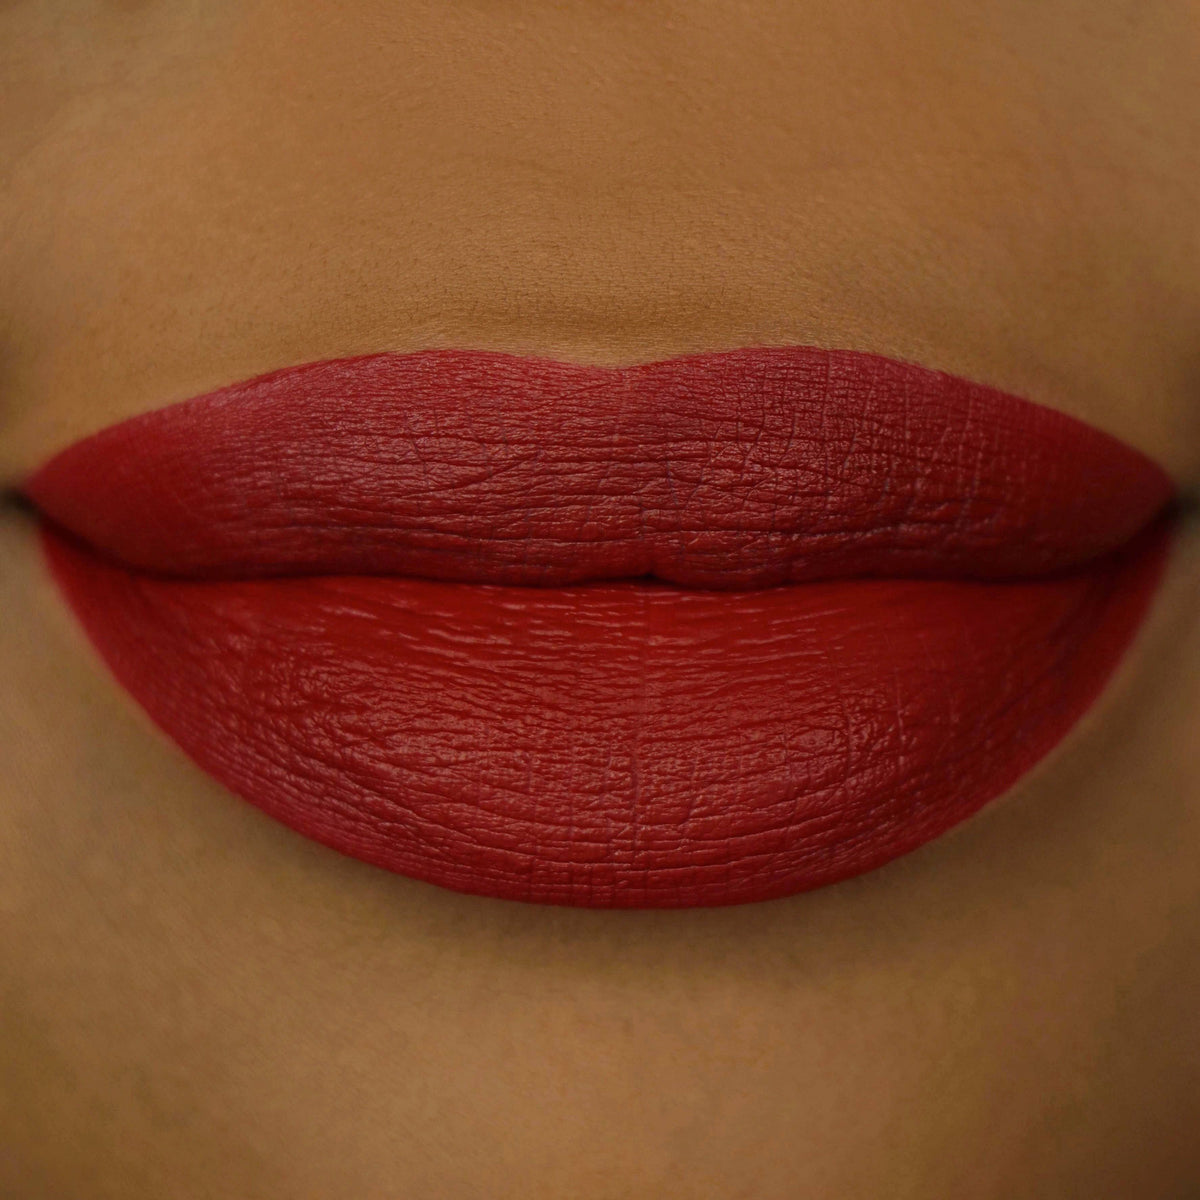 Vampire Matte Liquid Lipstick - Coloured Raine Cosmetics